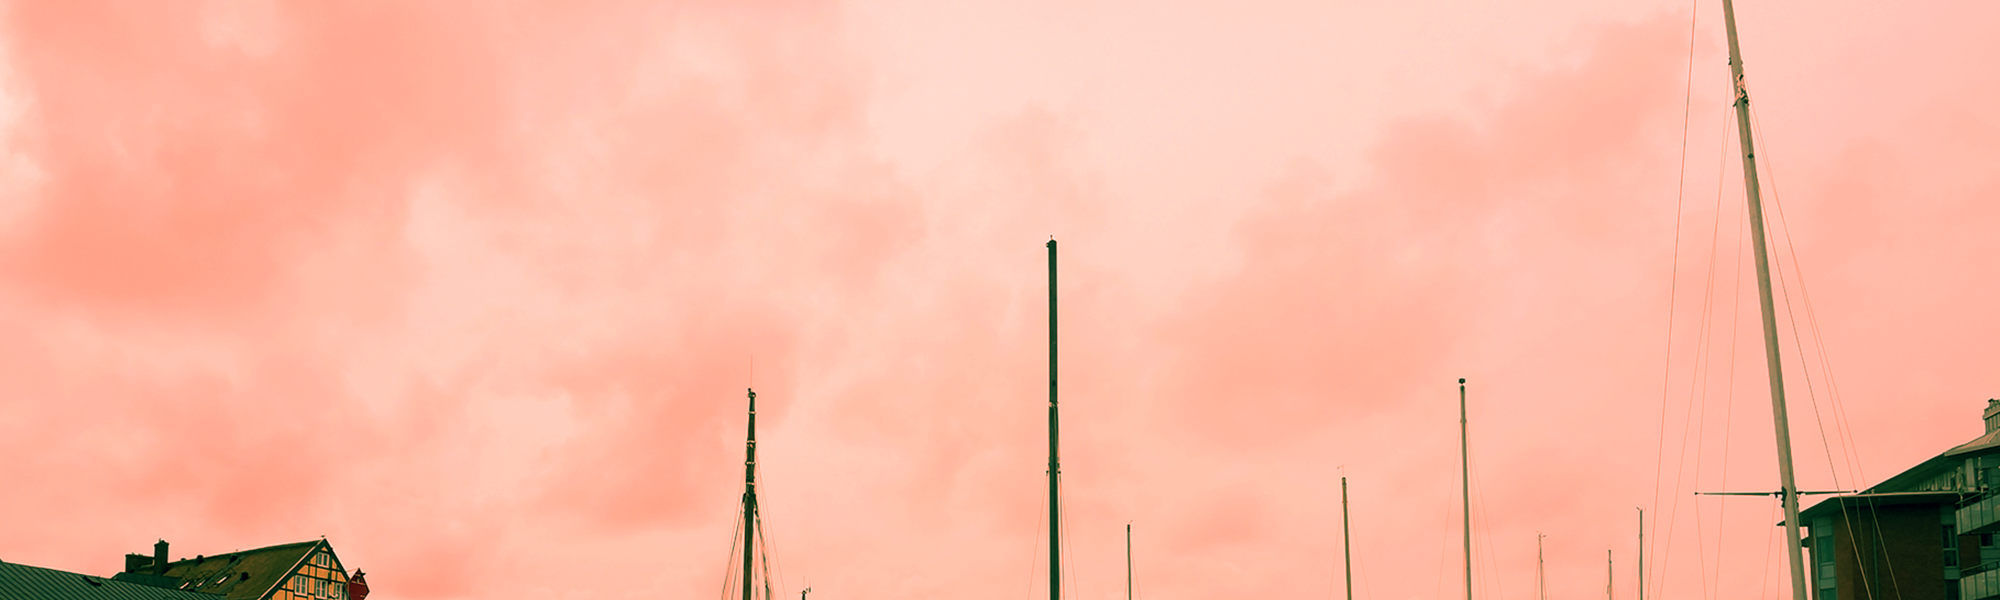 Båtmaster mot rosa himmel